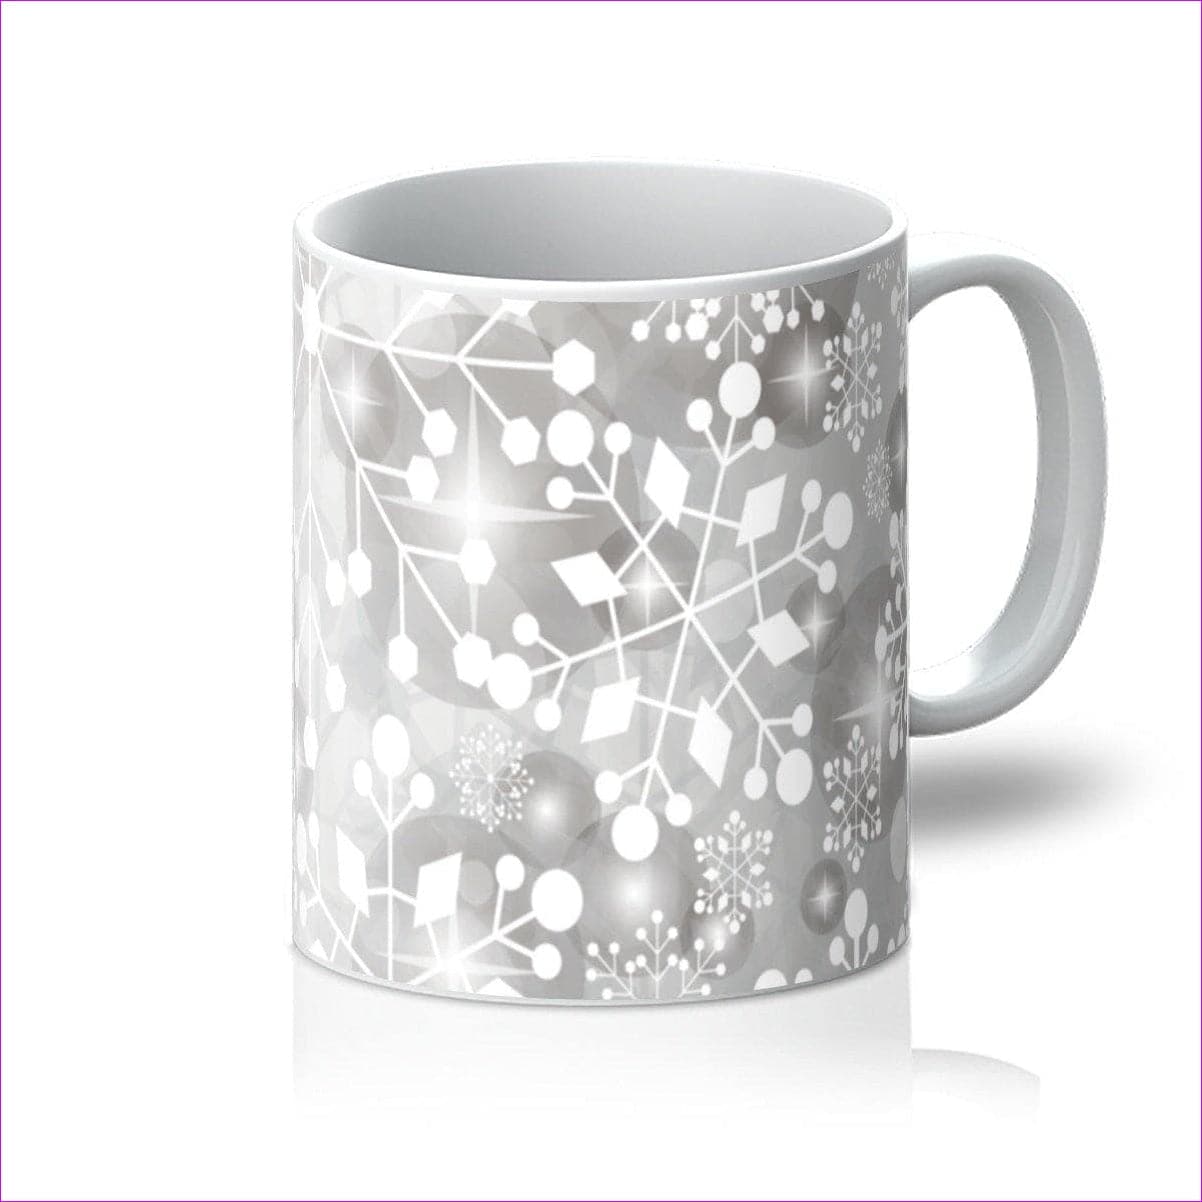 Chilly Christmas Mug Mug - Homeware at TFC&H Co.